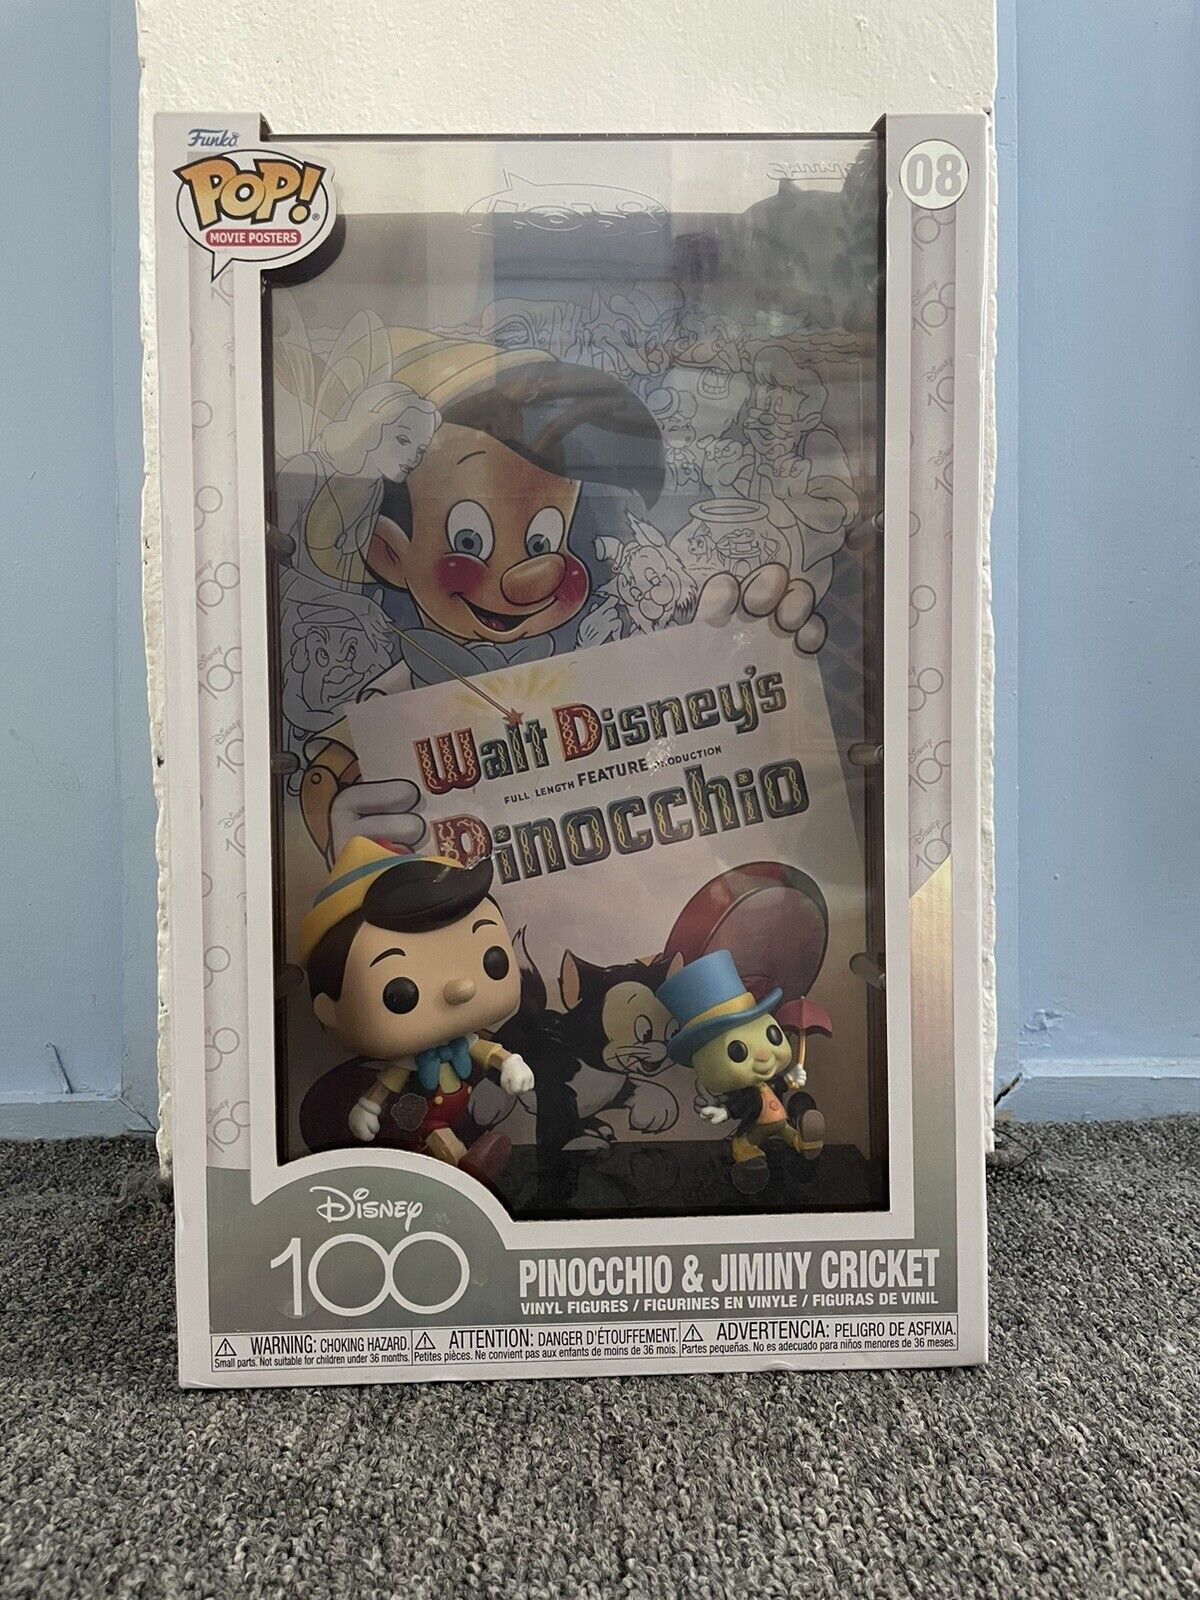 Disney 100 Funko Pop Pinocchio Movie Poster NEW In Box